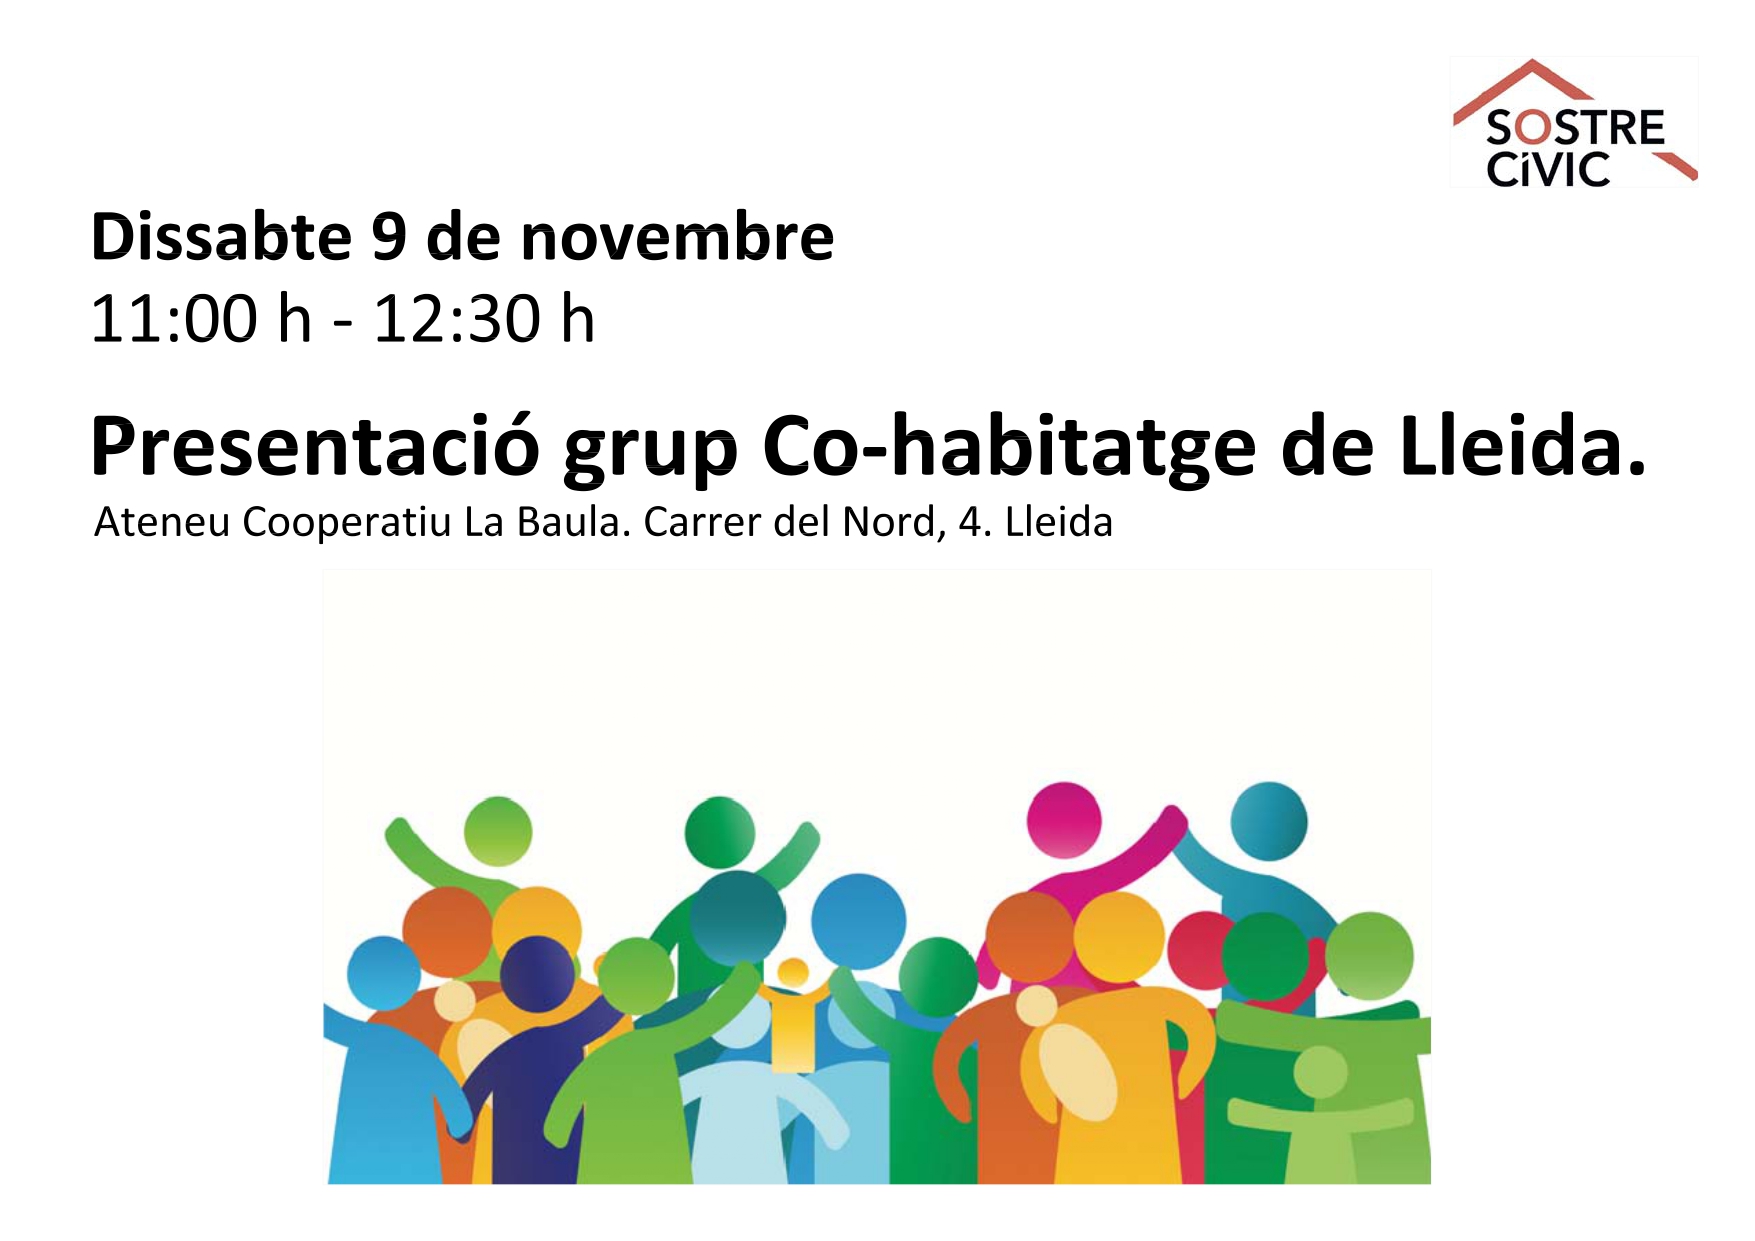 Presentació grup Co-habitatge de Lleida